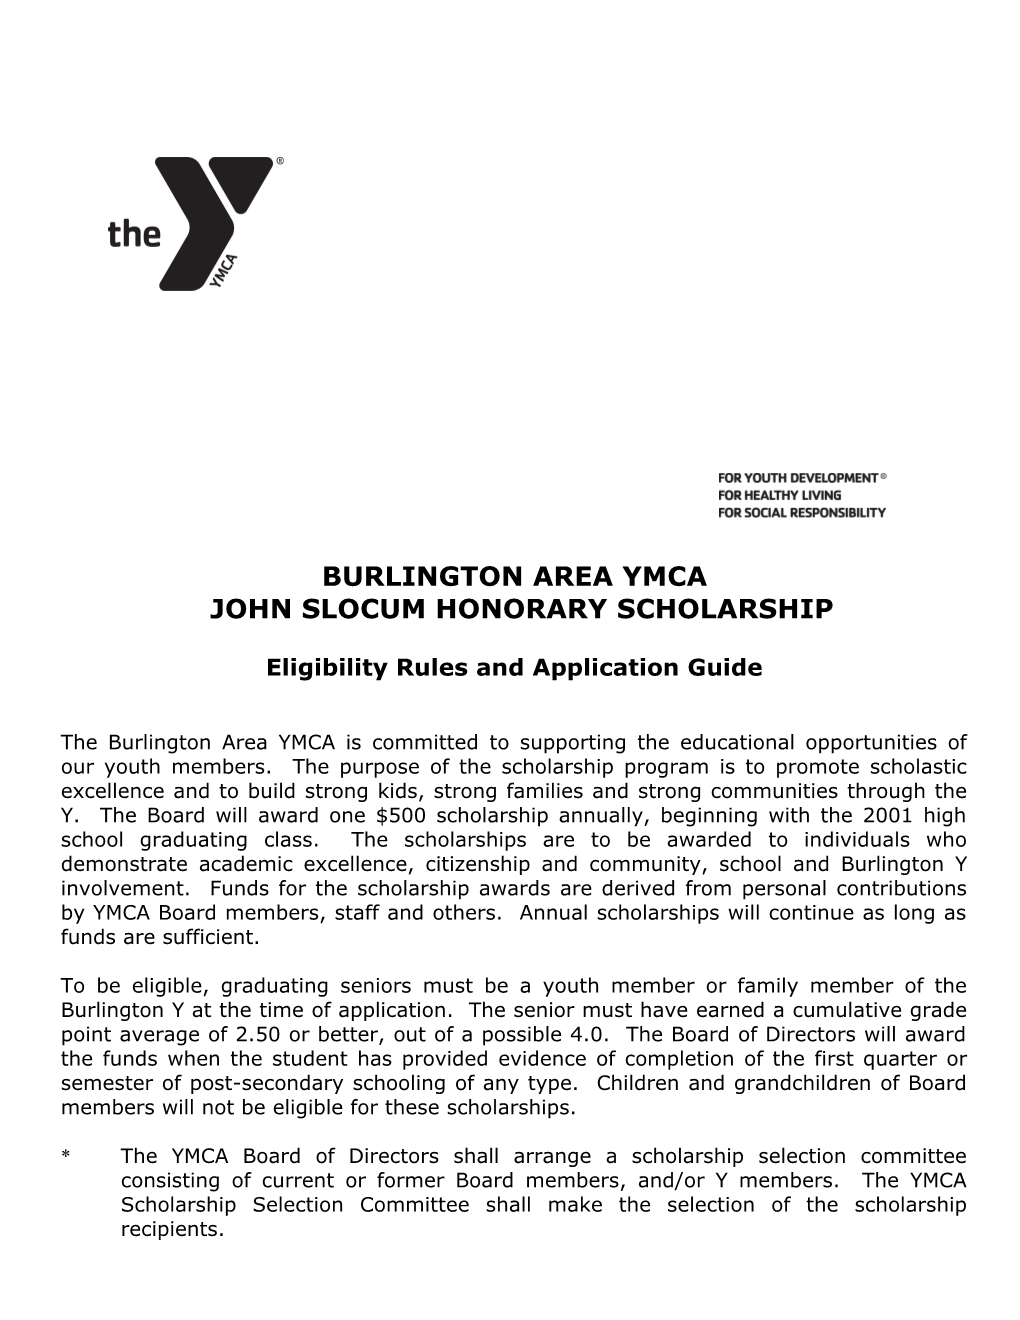 John Slocum Honorary Scholarship